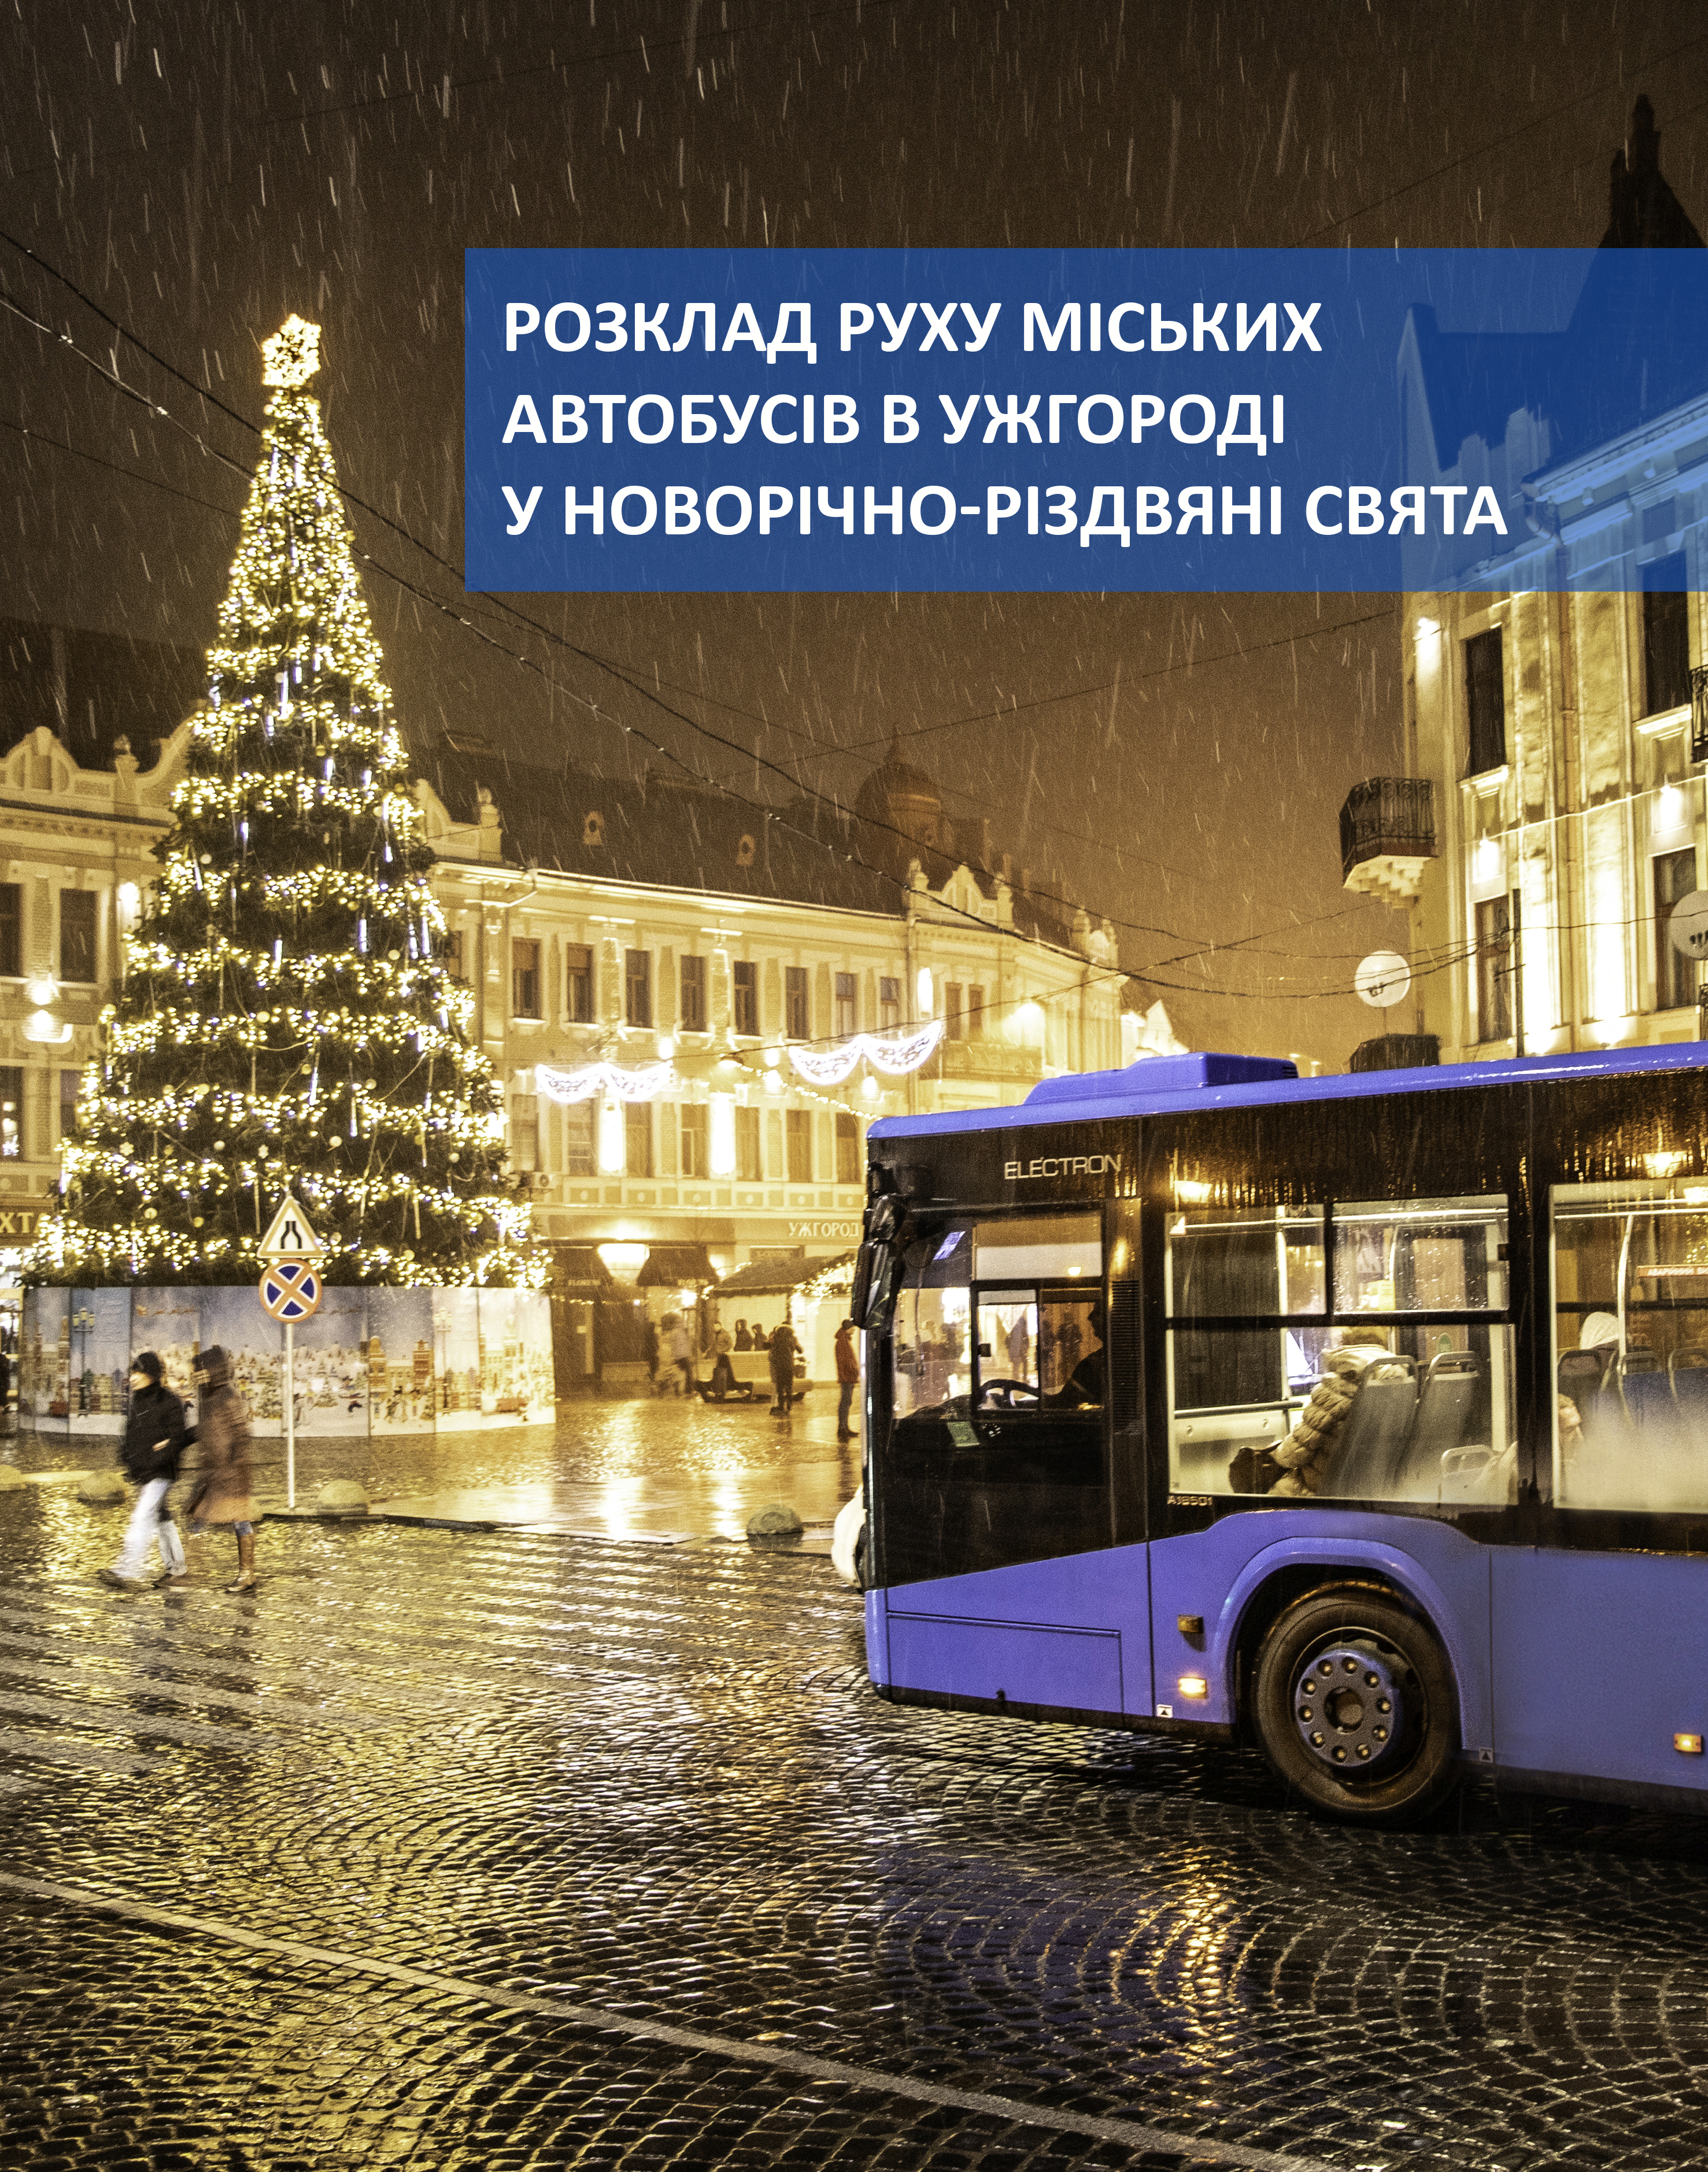 В Ужгороді оприлюднили розклад руху автобусів на міських маршрутах у новорічно-різдвяні свята